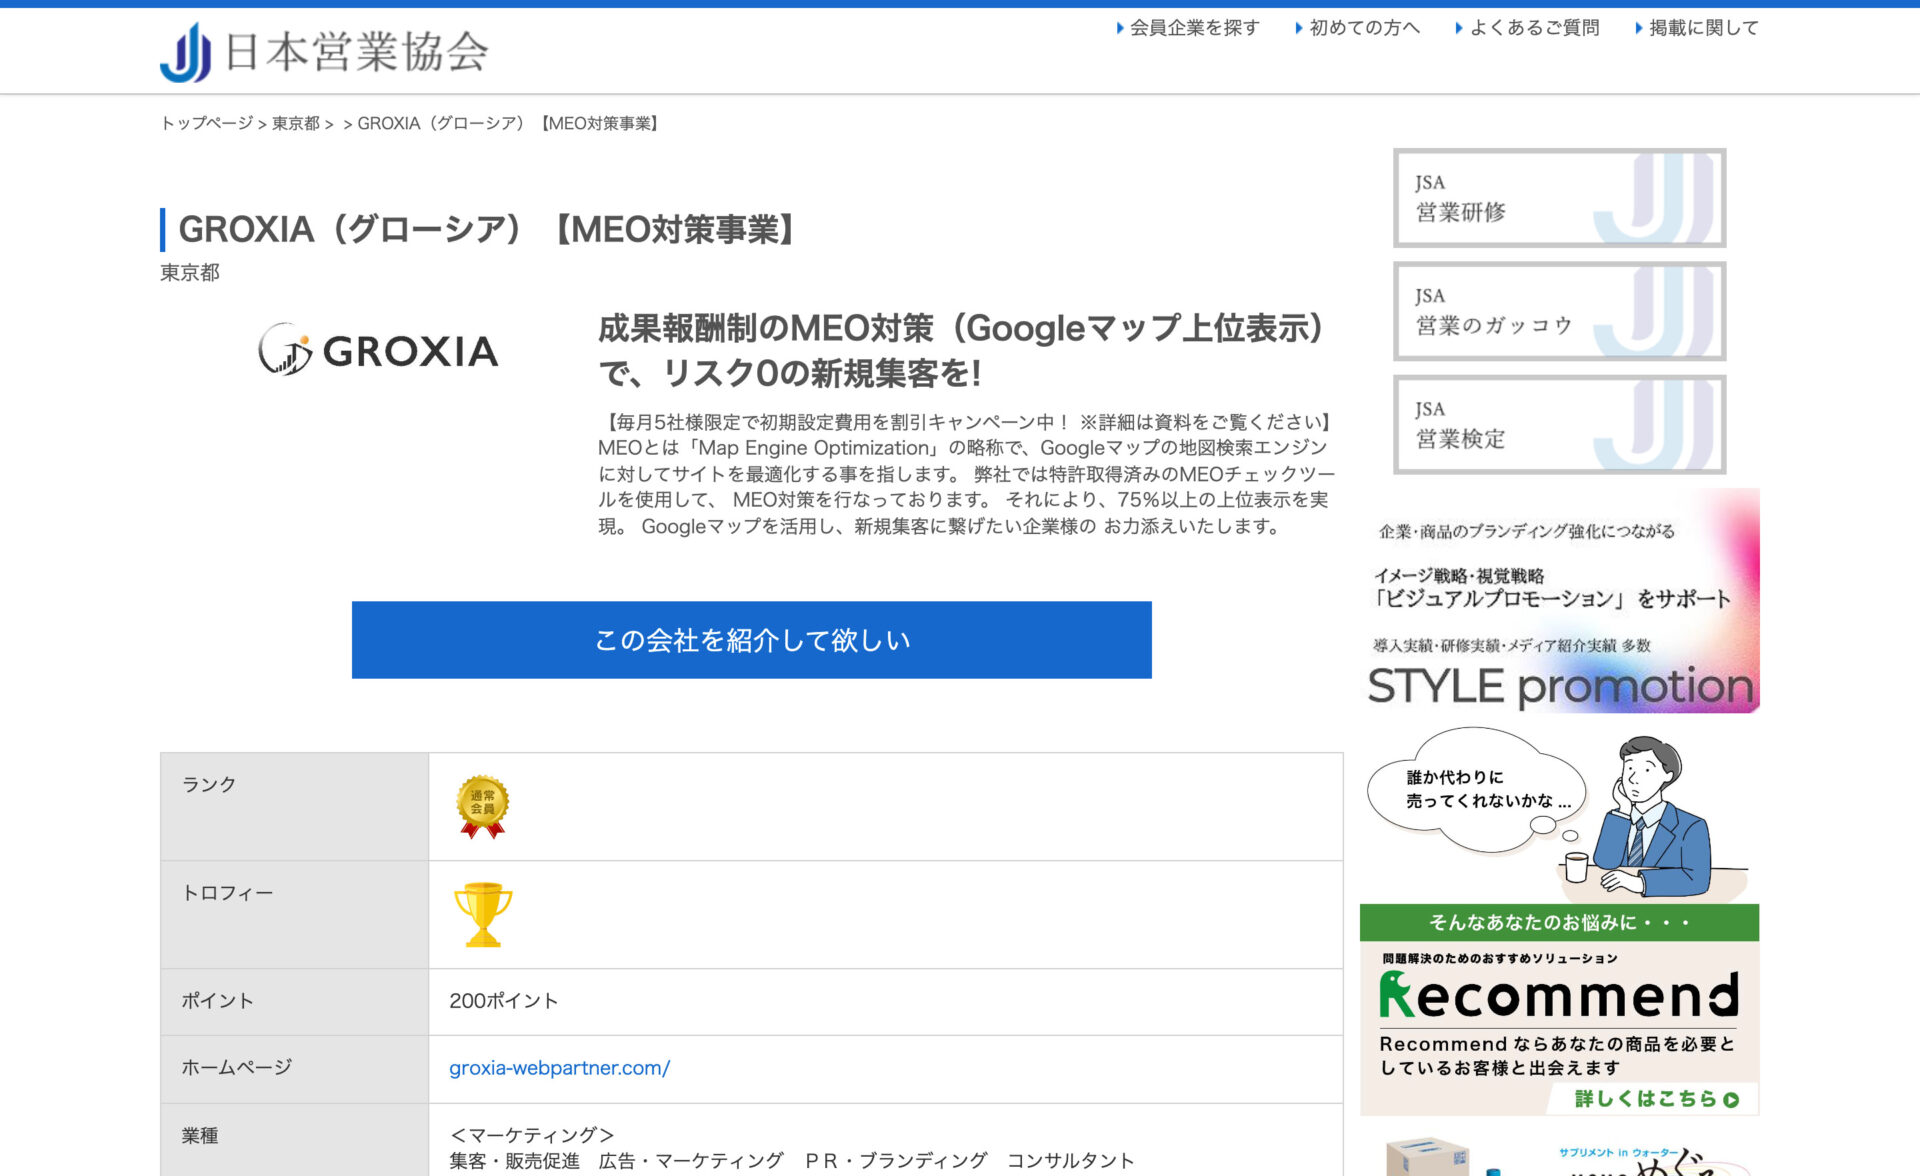 日本営業協会様にGROXIAのMEO対策サービスを掲載していただきました。